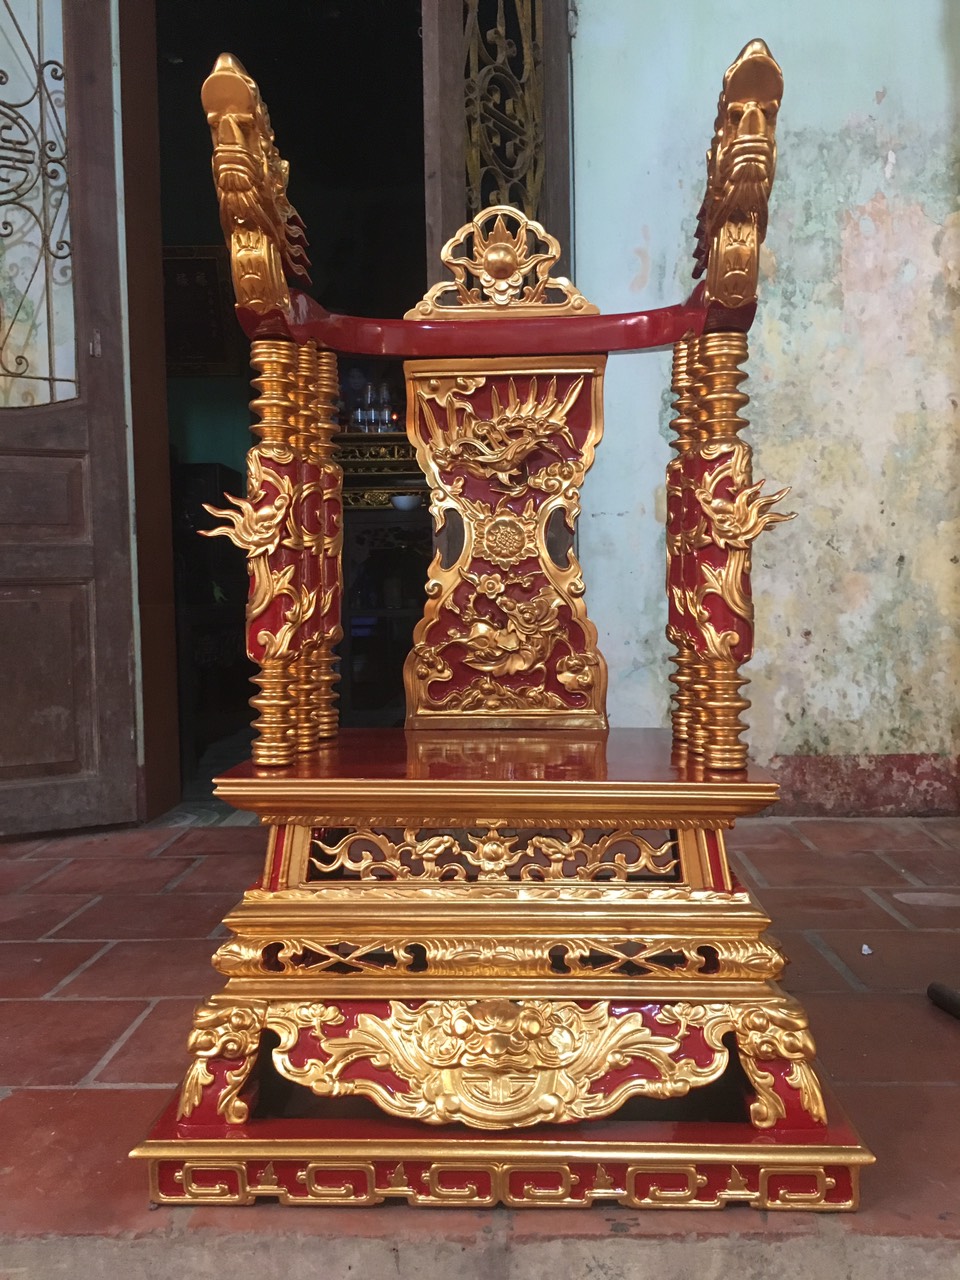 Ý nghĩa của ngai thờ trong tín ngưỡng thờ cúng của người Việt